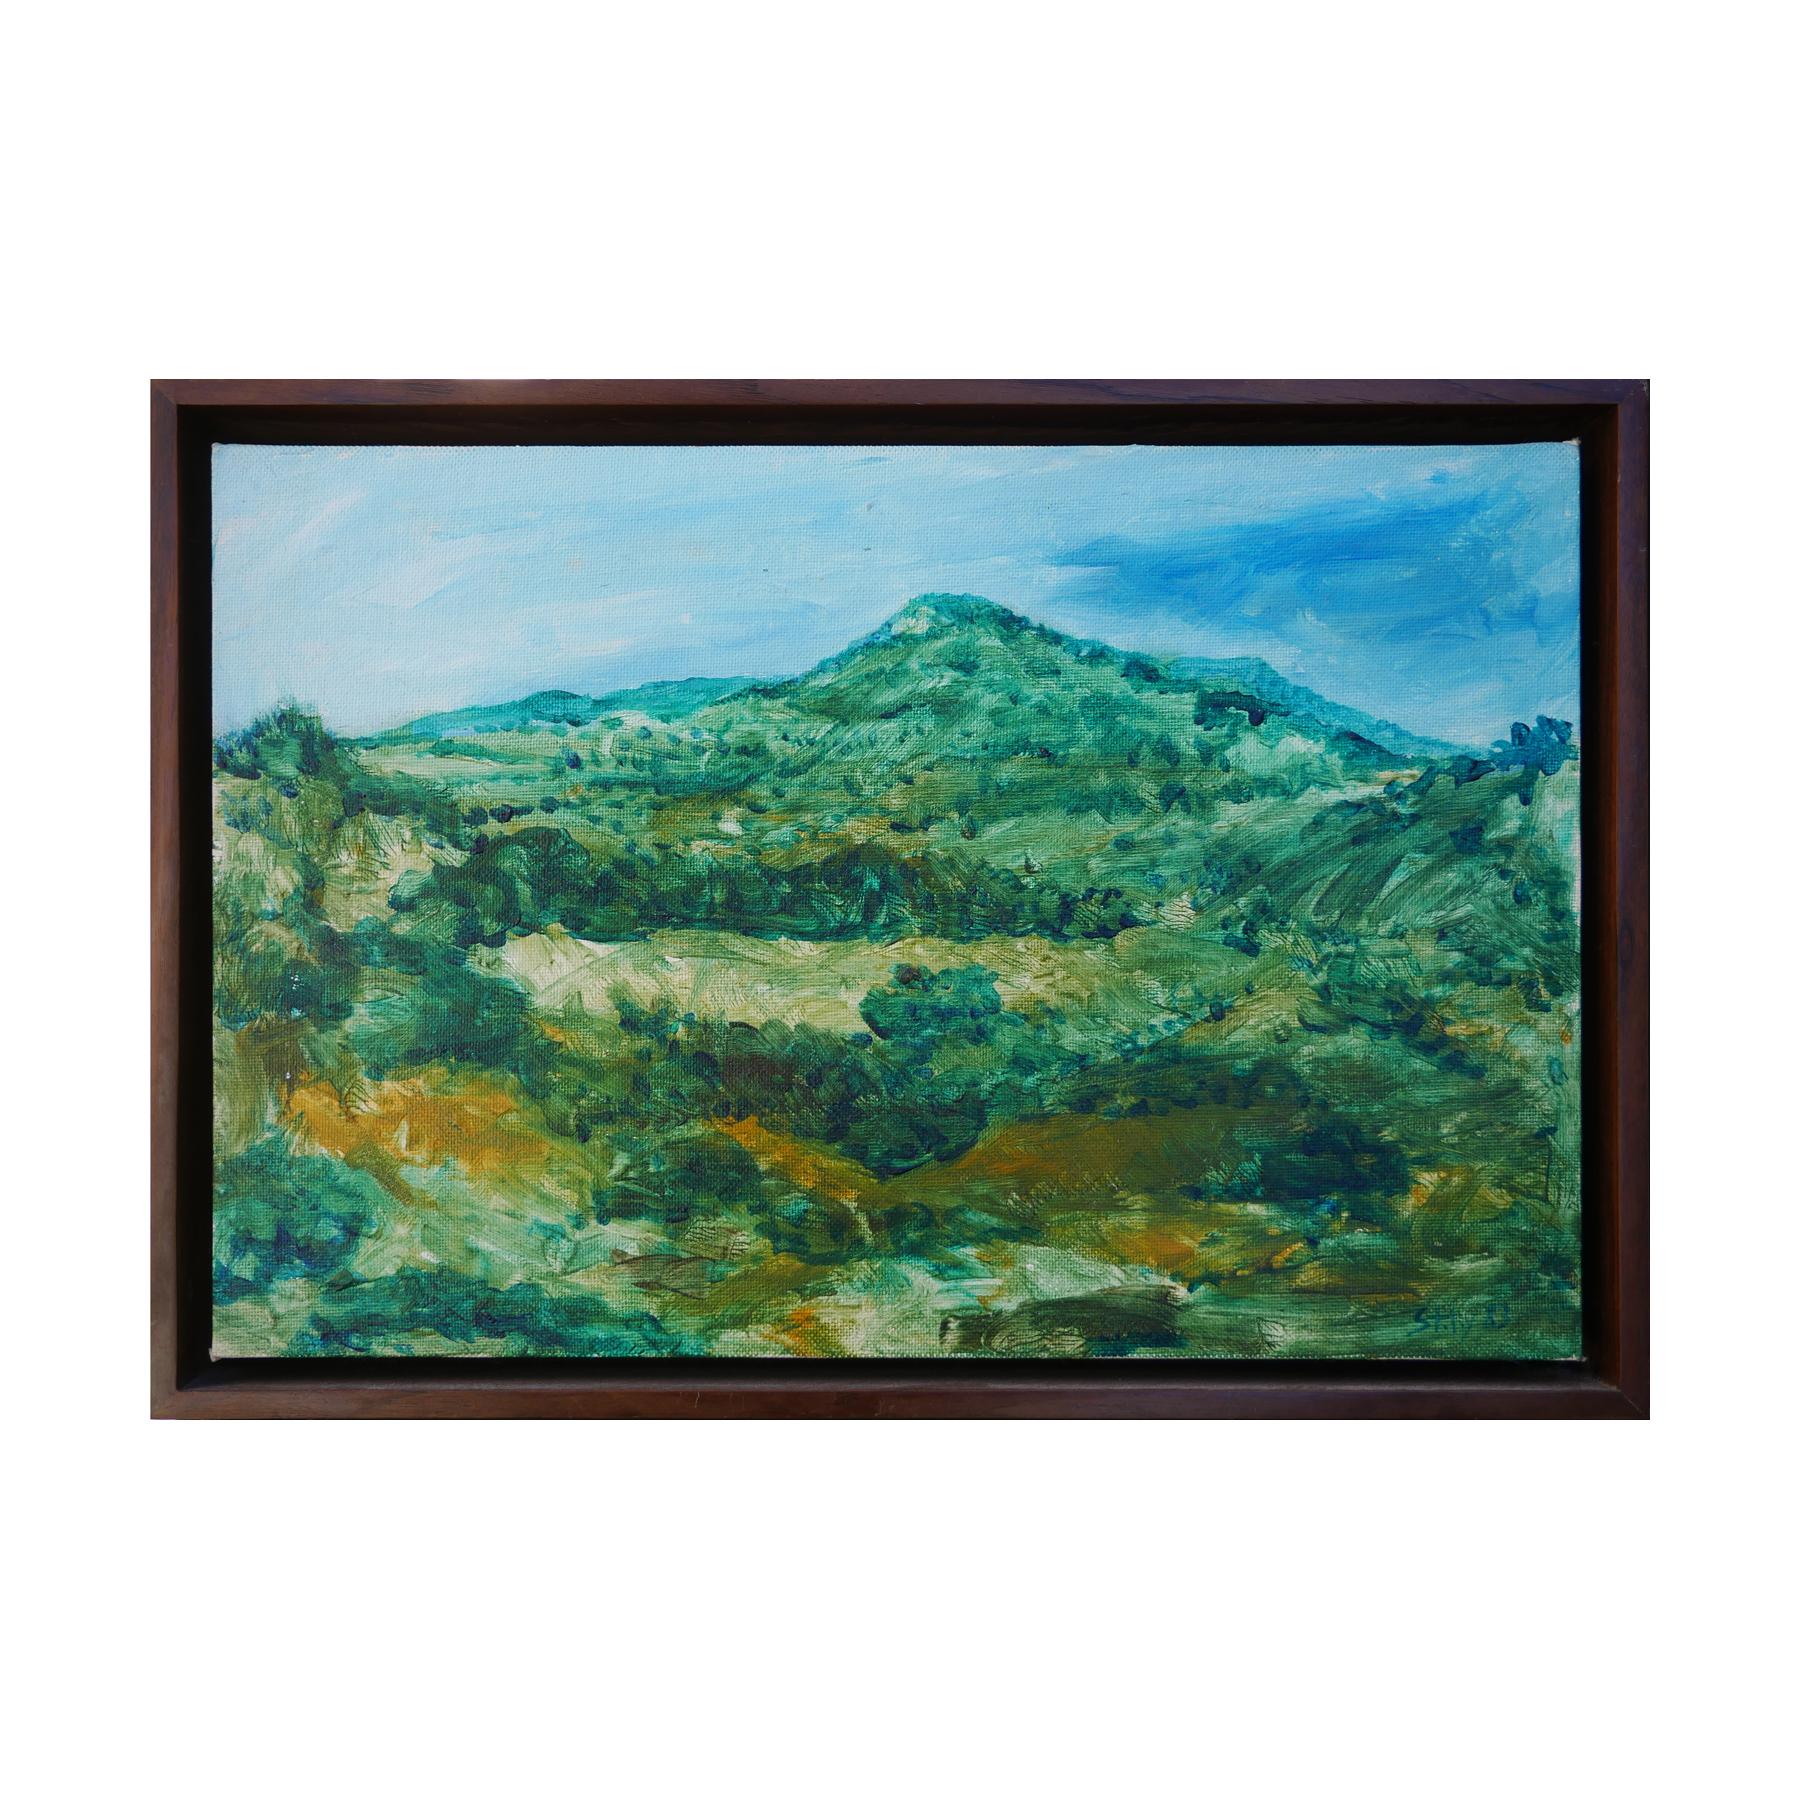 Modernes grünes und blau getöntes abstraktes impressionistisches Berglandschaftsgemälde – Painting von Earl Staley